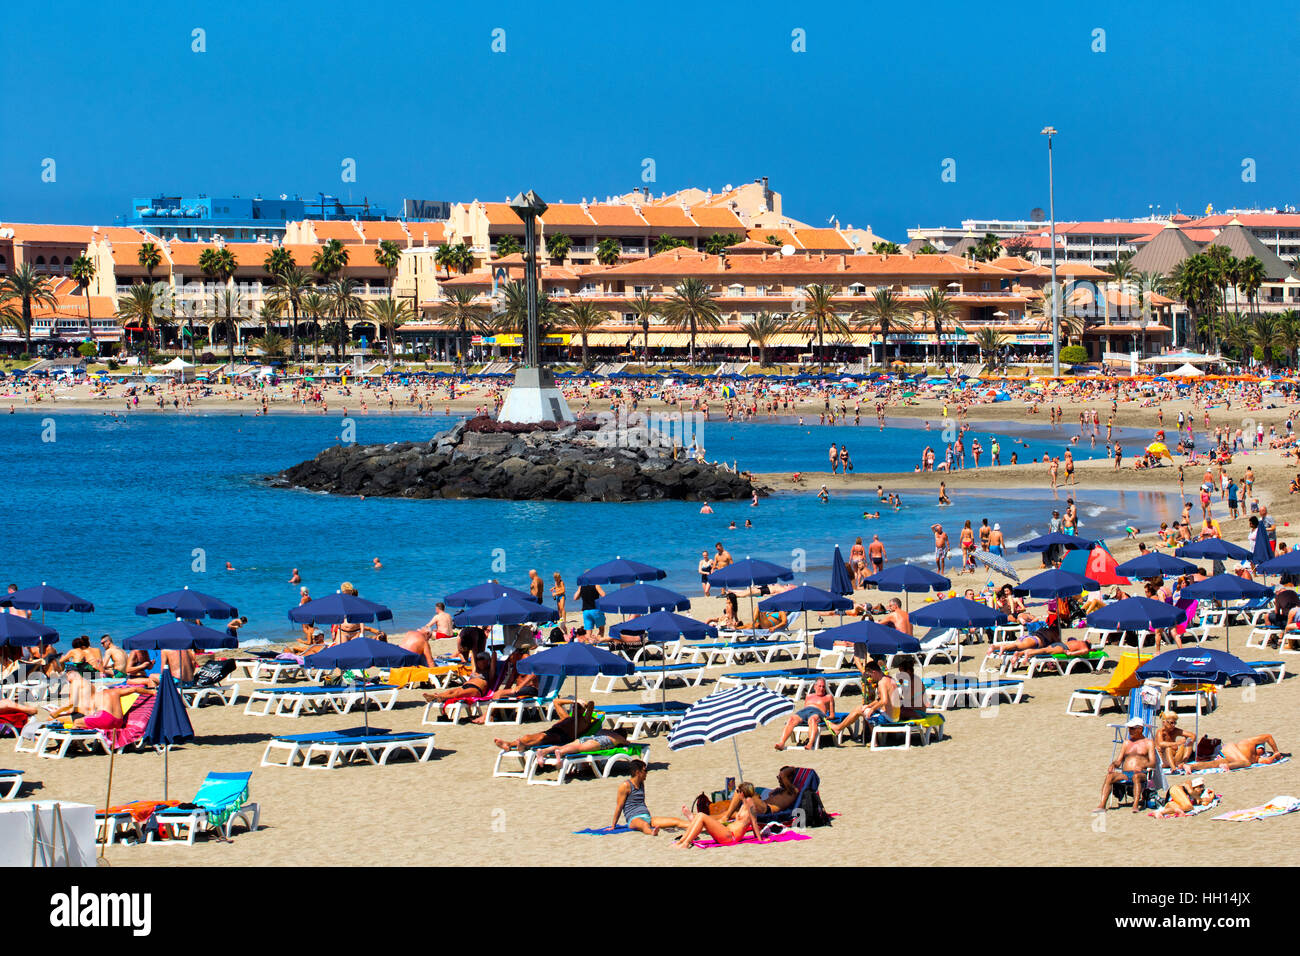 La playa de Los Cristianos, en Tenerife, Islas Canarias Foto de stock